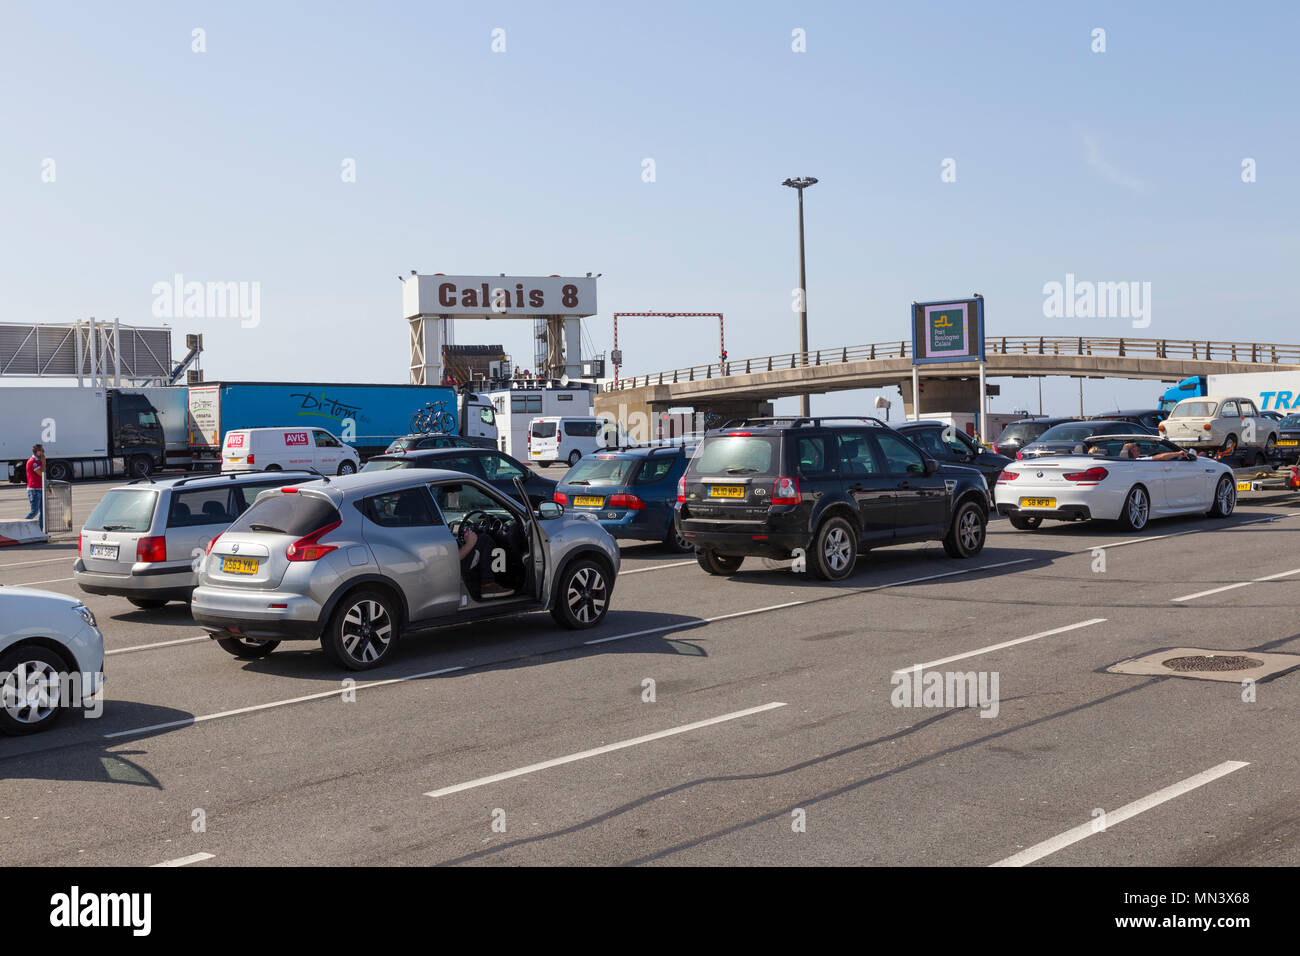 Calais Terminal, France Stock Photo - Alamy